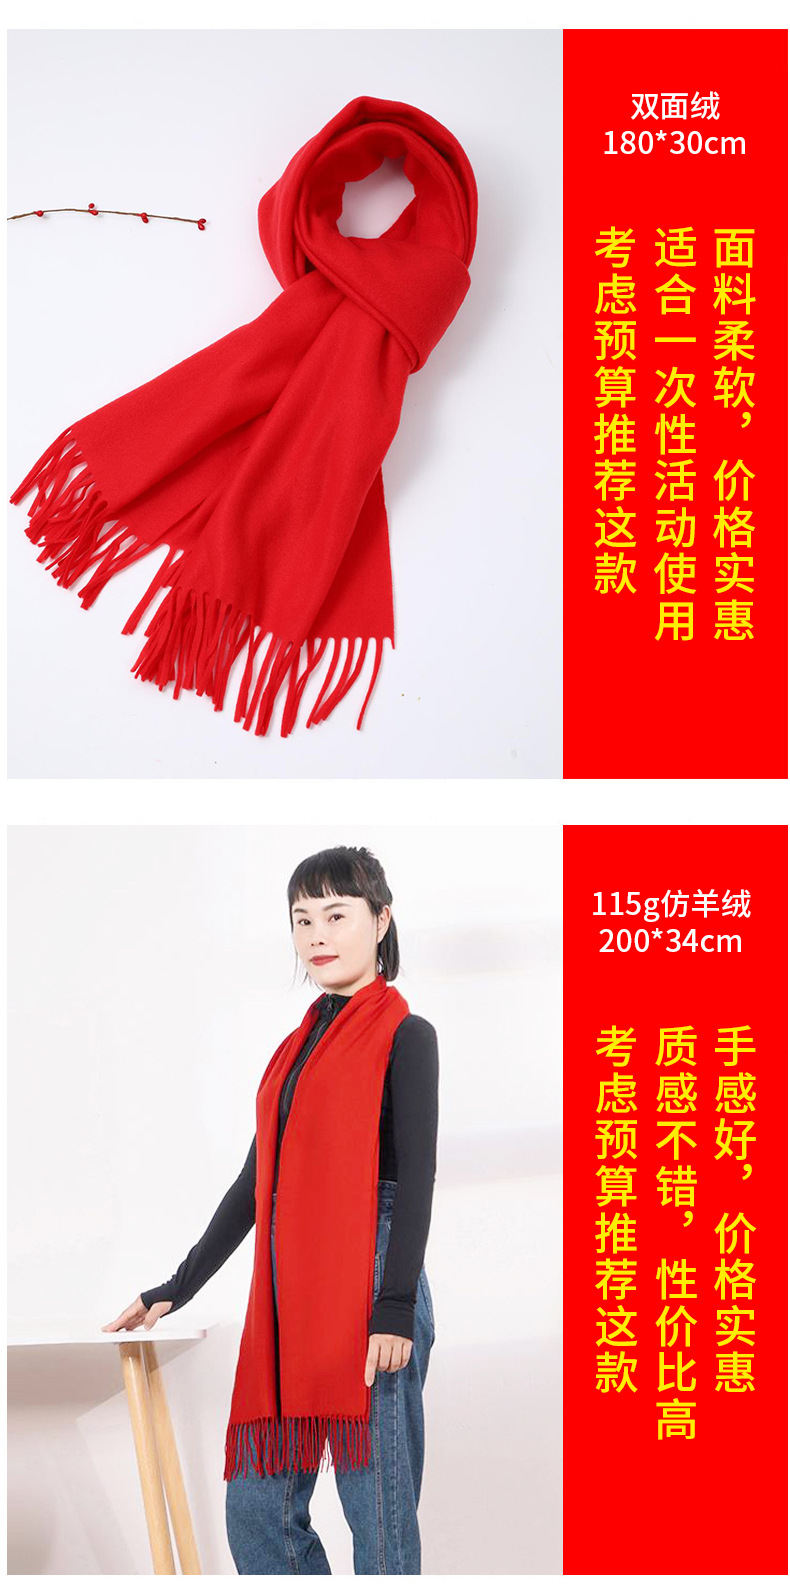 中国围巾十大品牌图片